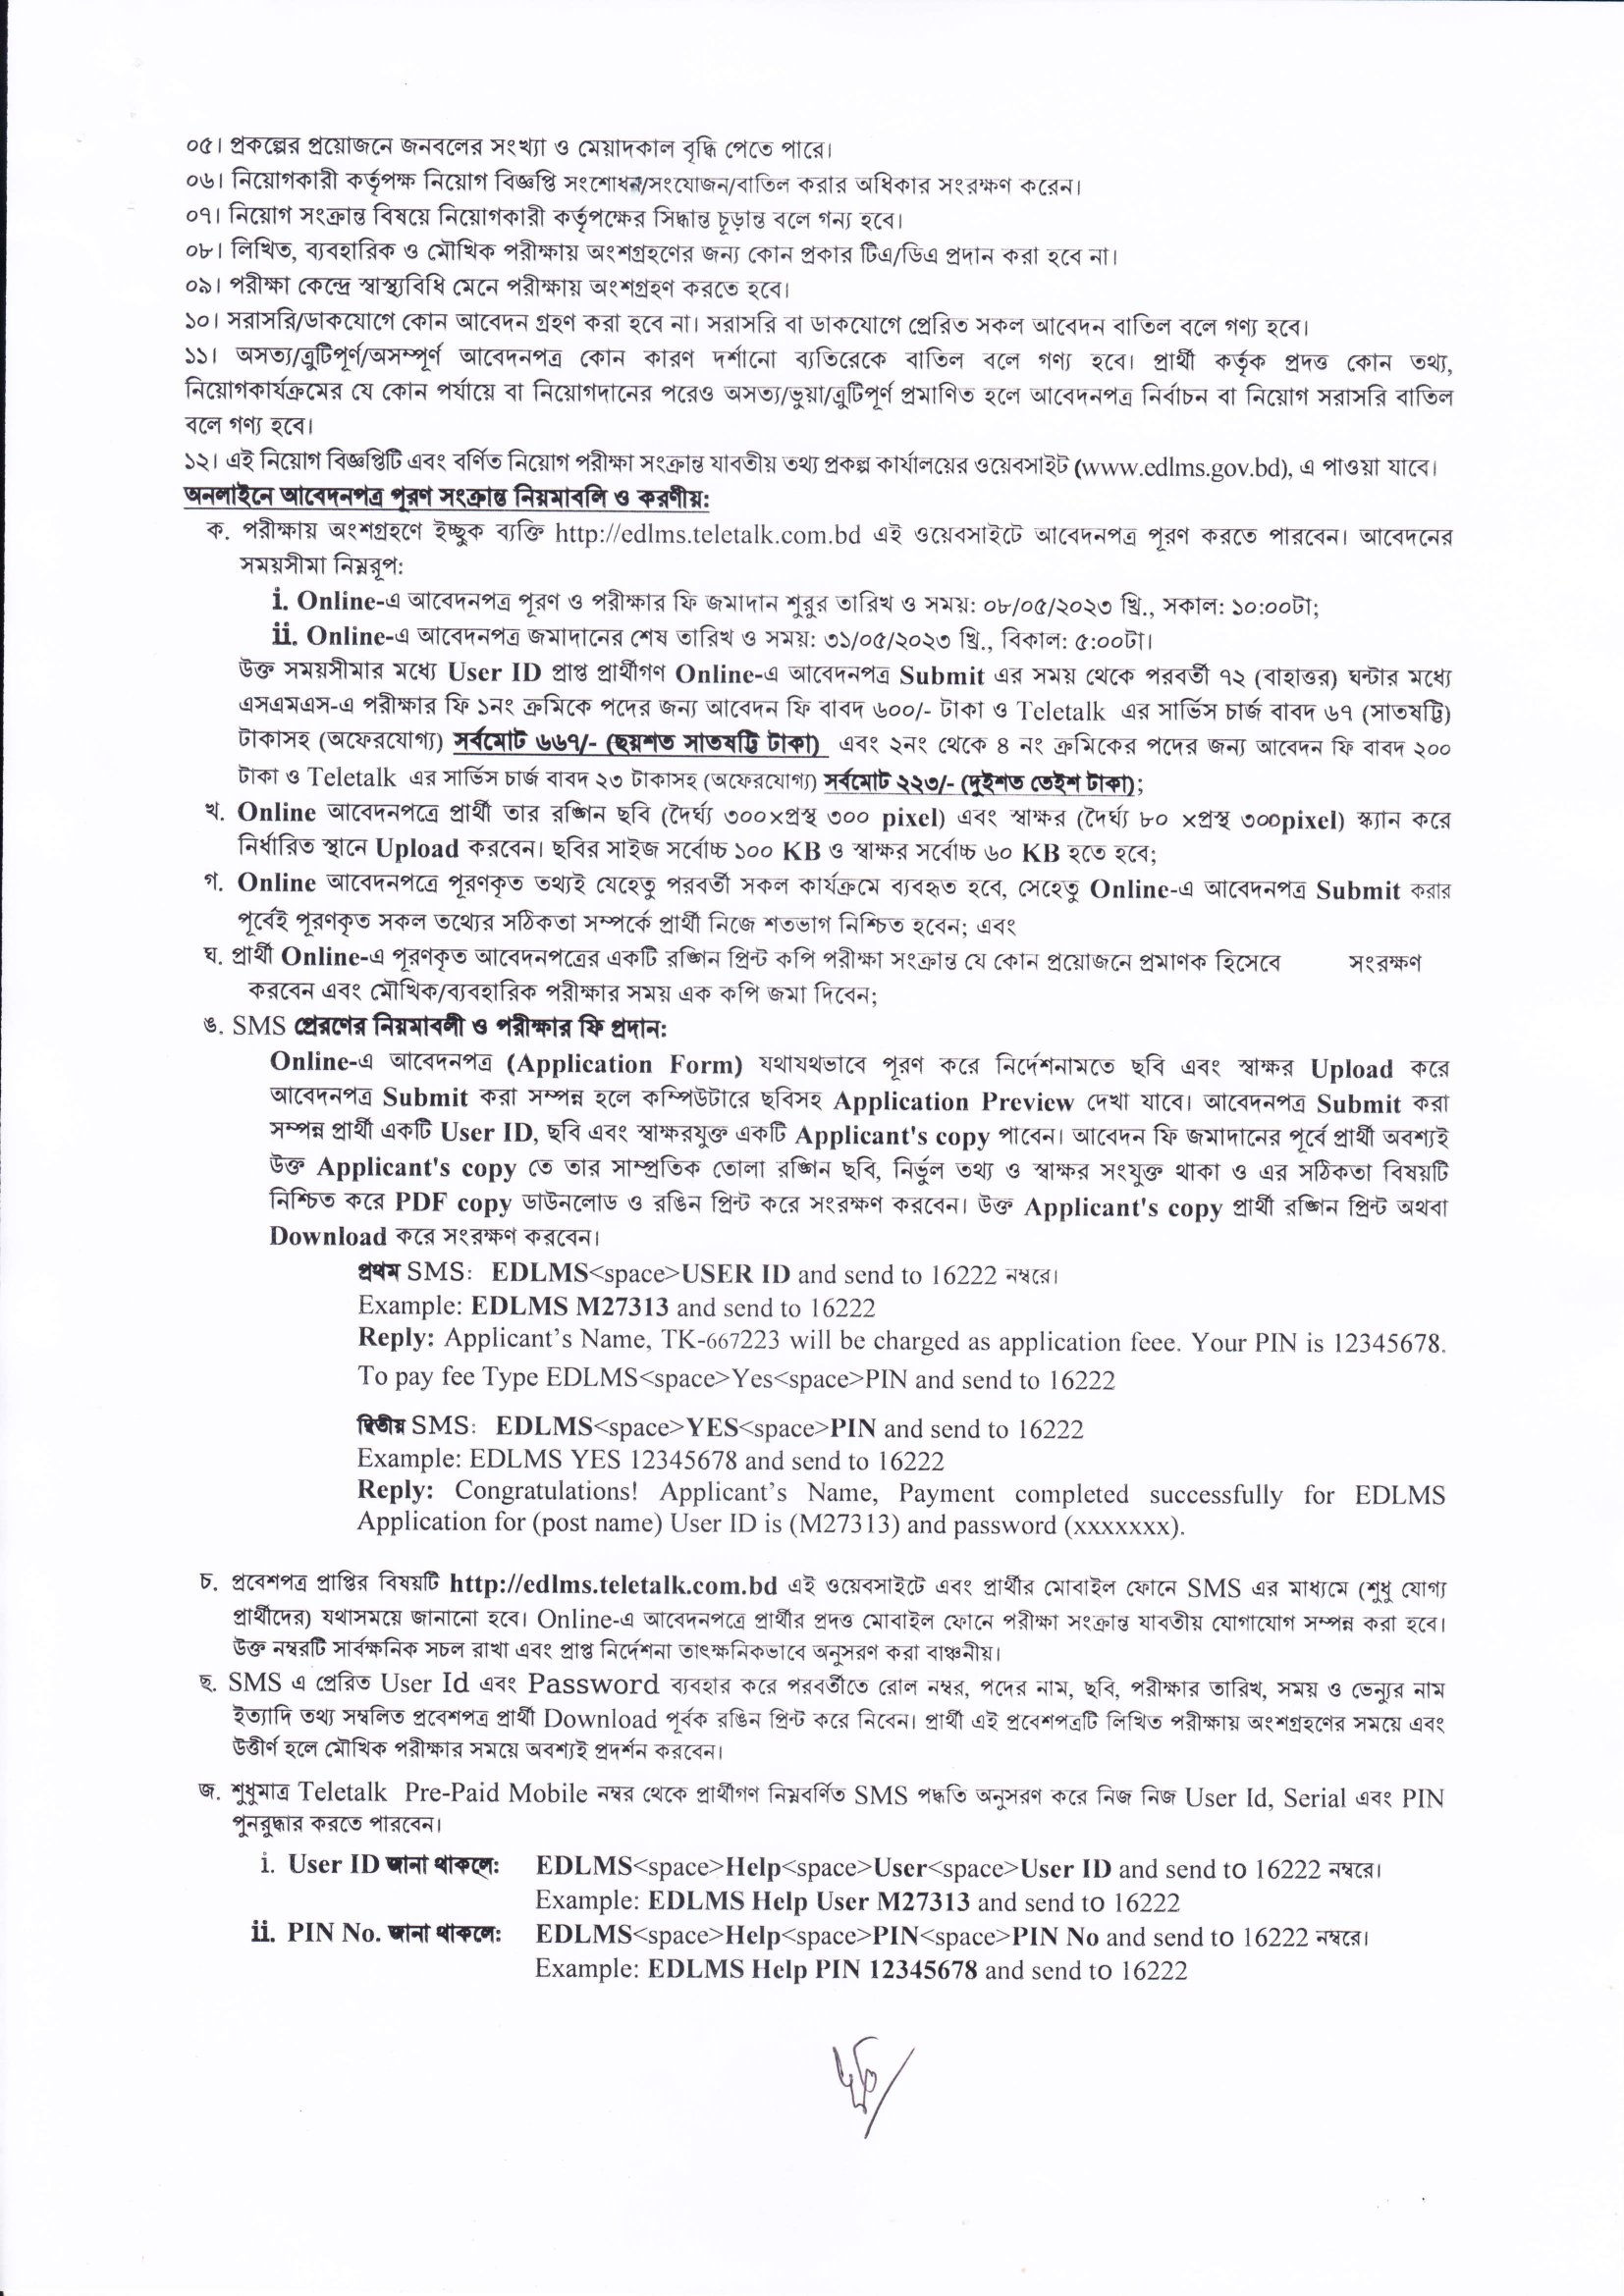 ভূমি রেকর্ড ও জরিপ অধিদপ্তর নিয়োগ 2023 সার্কুলার - Directorate of Land Records and Survey Recruitment 2023 Circular - অধিদপ্তর নিয়োগ 2023 সার্কুলার - Recruitment 2023 Circular